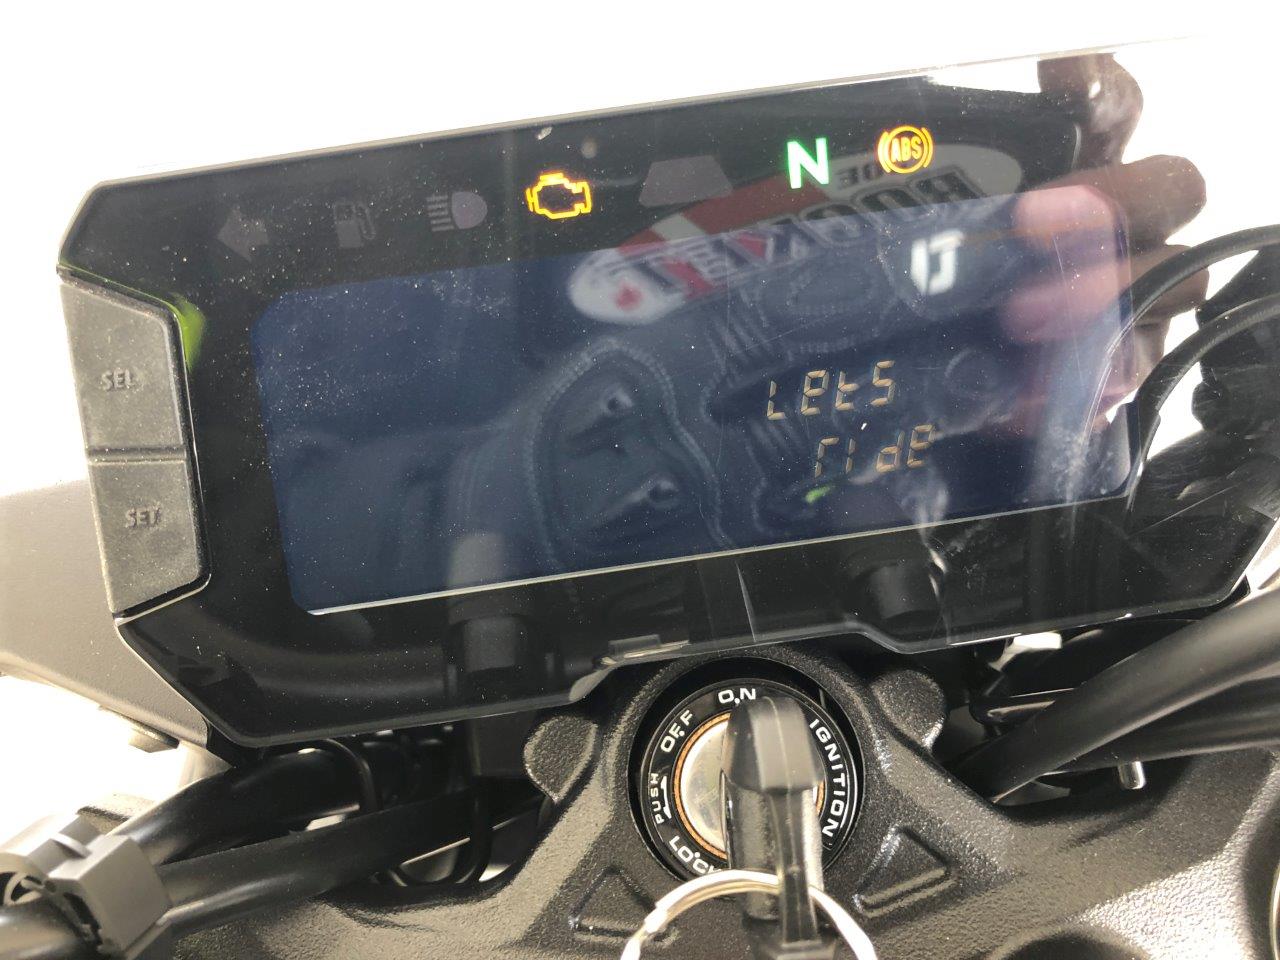 2019 Honda CB300R dash.